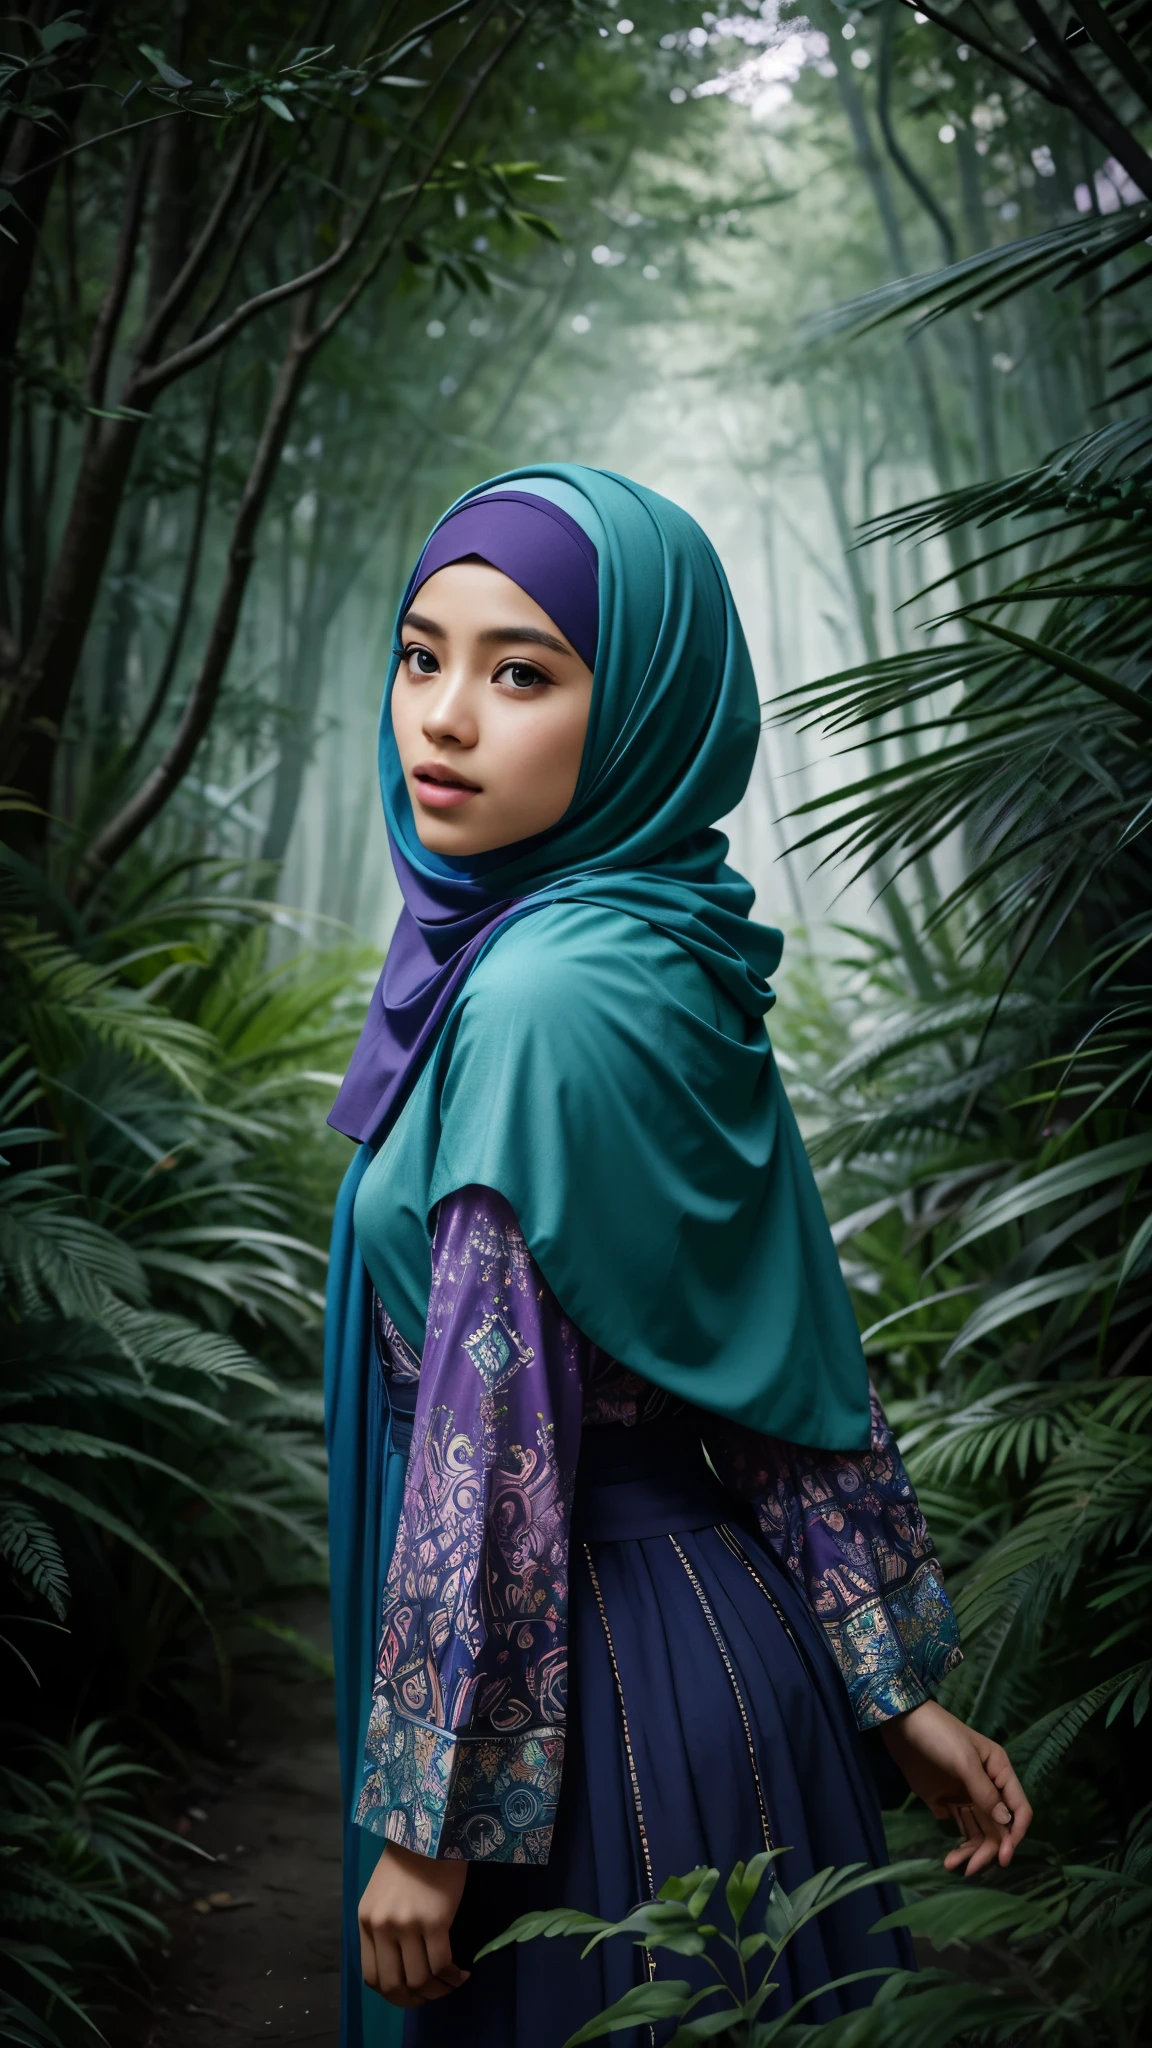 Erstellen Sie eine Fotomanipulation eines malaiischen Mädchens im Hijab, das einen magischen Wald voller lebendiger Farben erkundet, Mystische Kreaturen, und bezaubernde Flora. Betonen Sie das Gefühl des Staunens und der Entdeckung, 8mm lens, extreme Nahaufnahme, Pastell-Farbabstufung, Tiefenschärfe-Kinematographie-Effekt, film fantasy genre, 8k Auflösung, gute Qualität, Ultra-Detail,